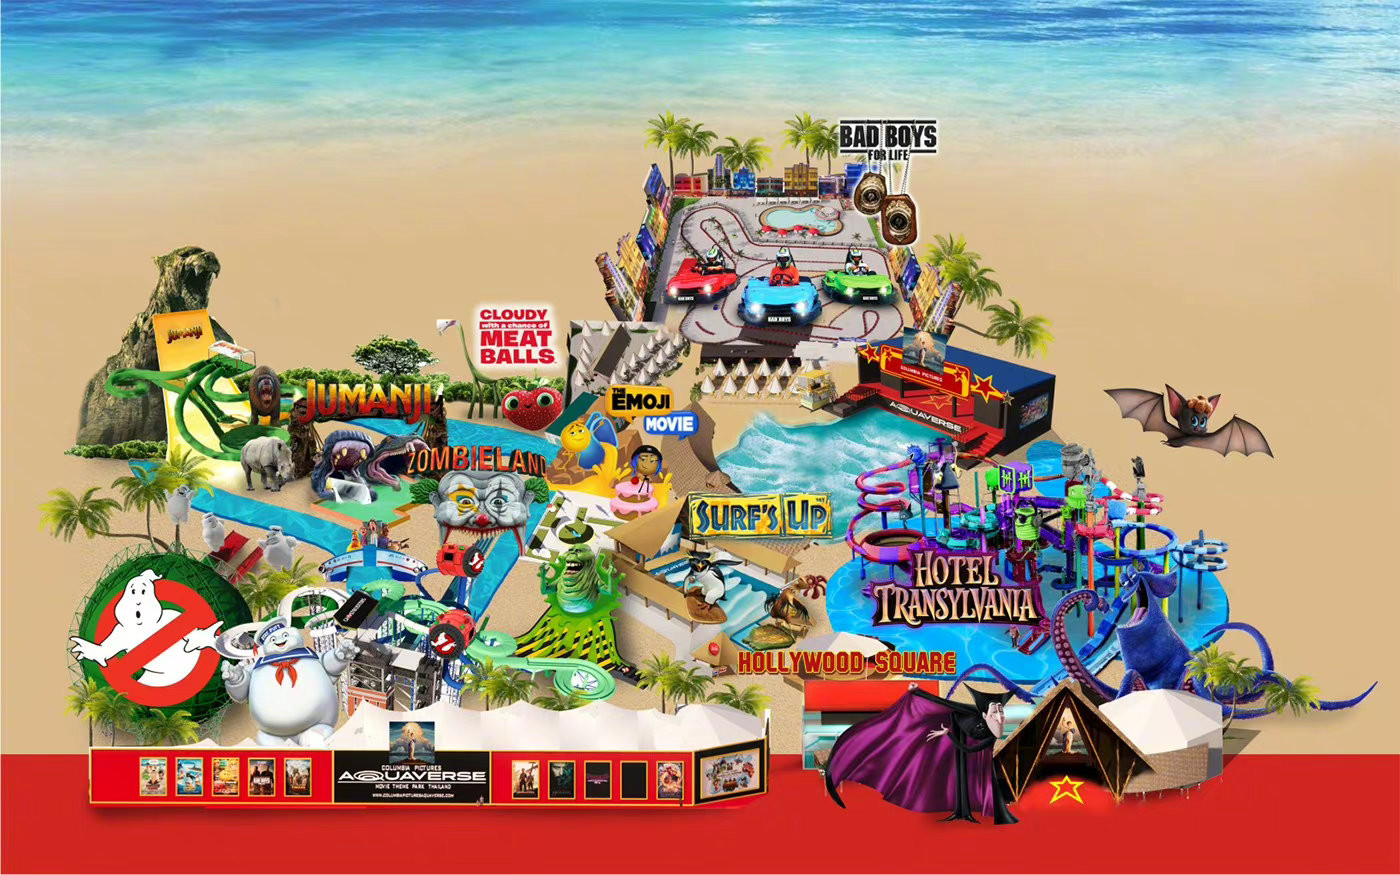 索尼影业全球首家主题水上乐园 10月12日开业